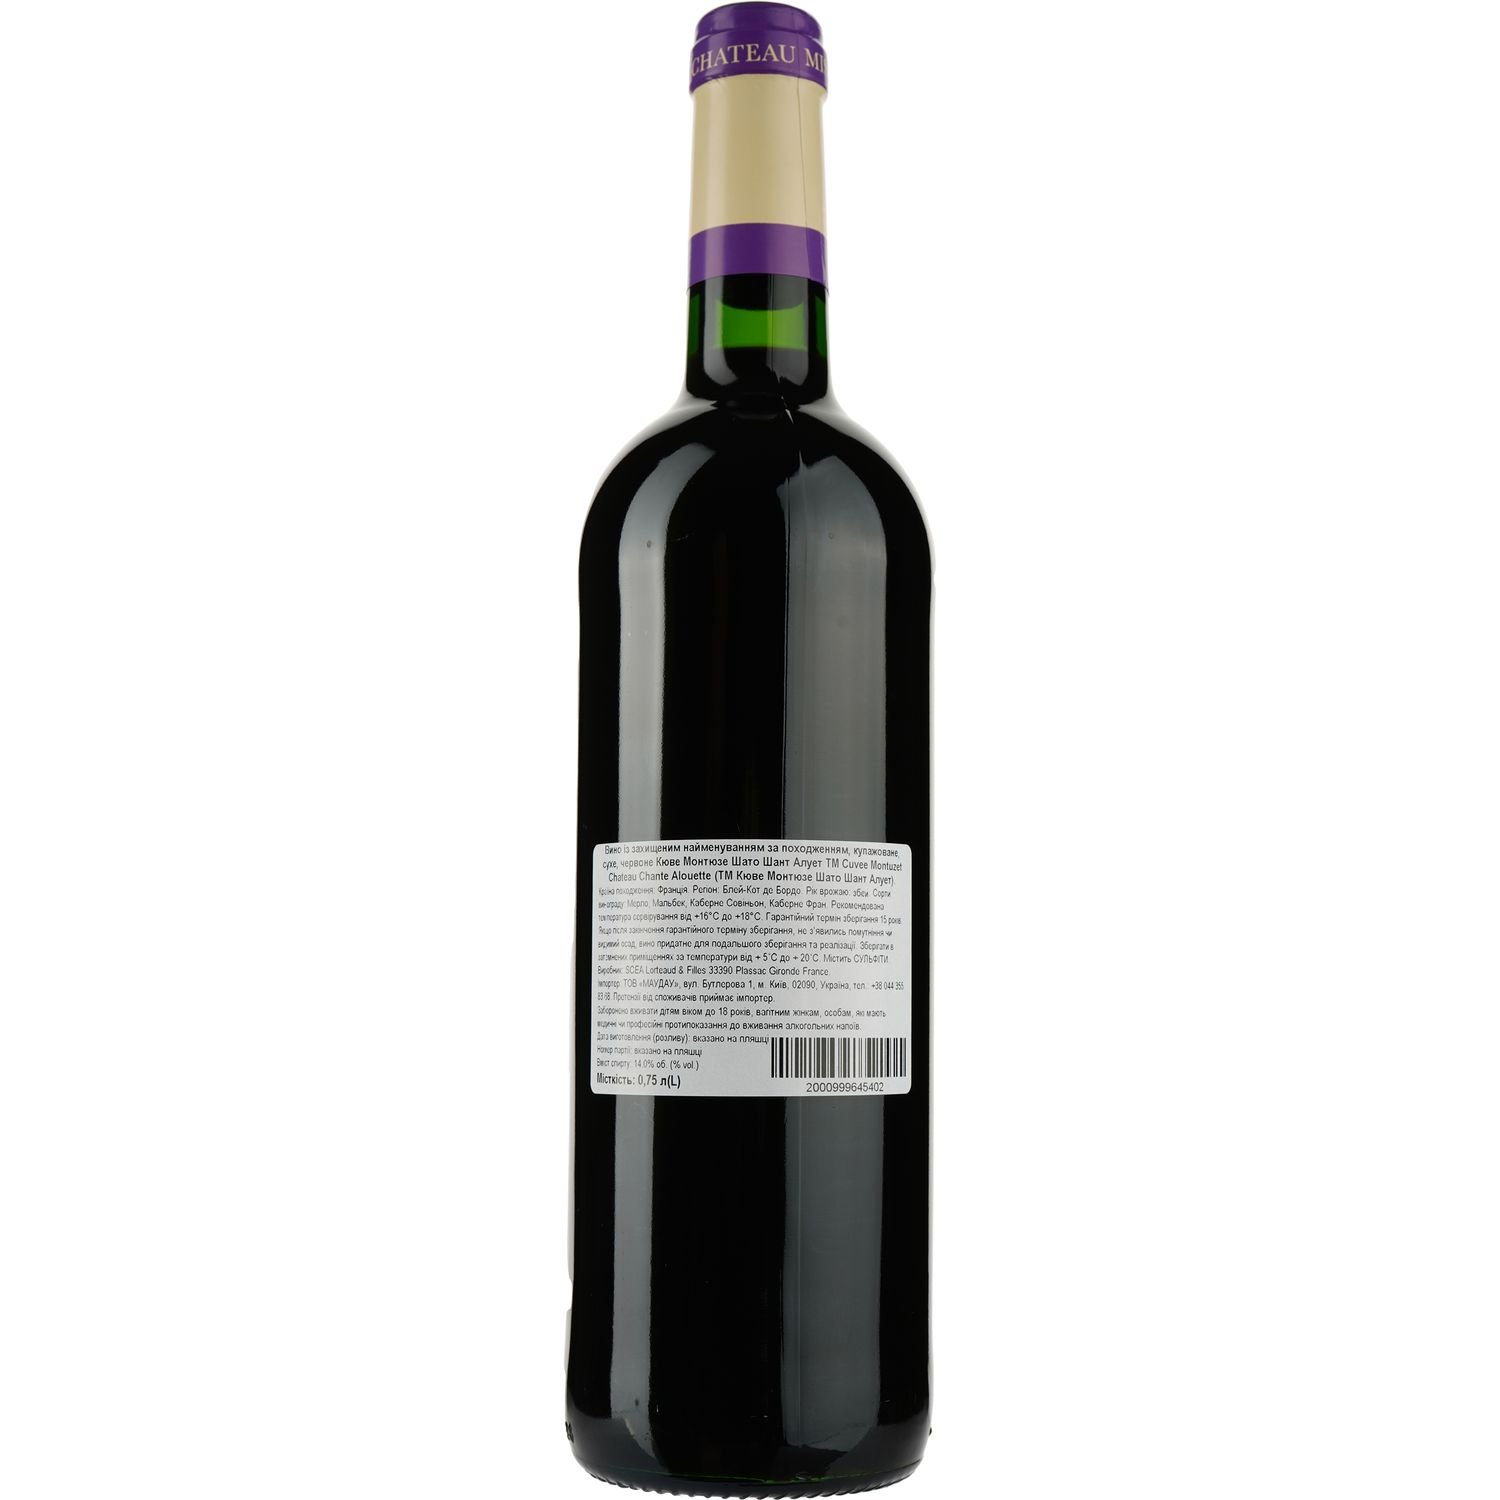 Вино Cuvee Montuzet Chateau Chante Alouette AOP Blaye Cotes de Bordeaux 2015, красное, сухое, 0,75 л - фото 2